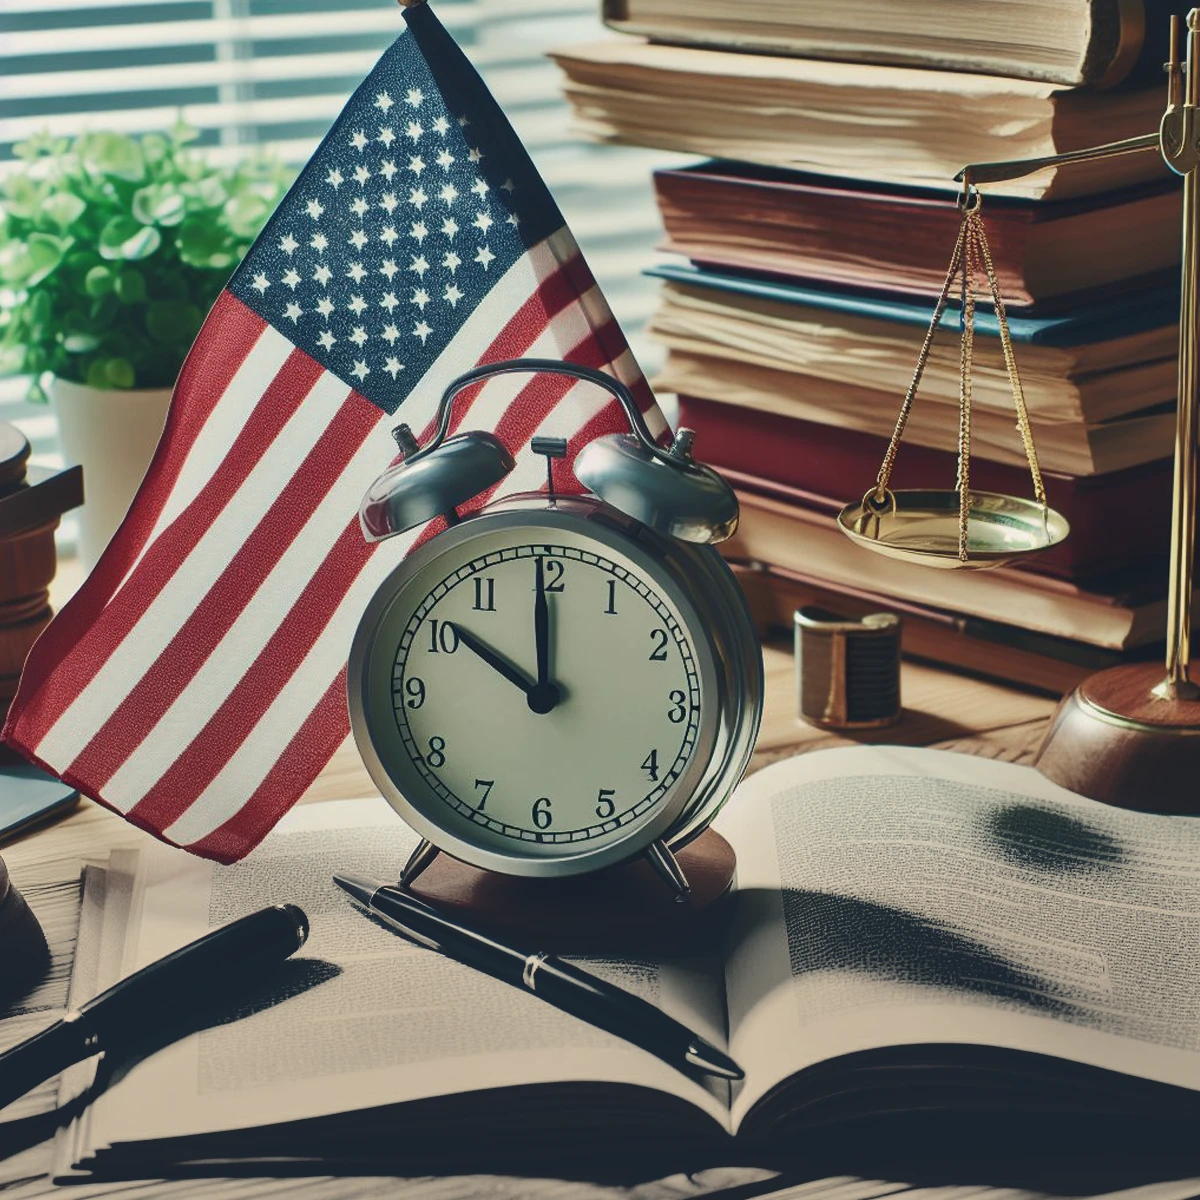 زمان اولویت پرونده در درخواست ویزای خانوادگی آمریکا به چه معناست؟